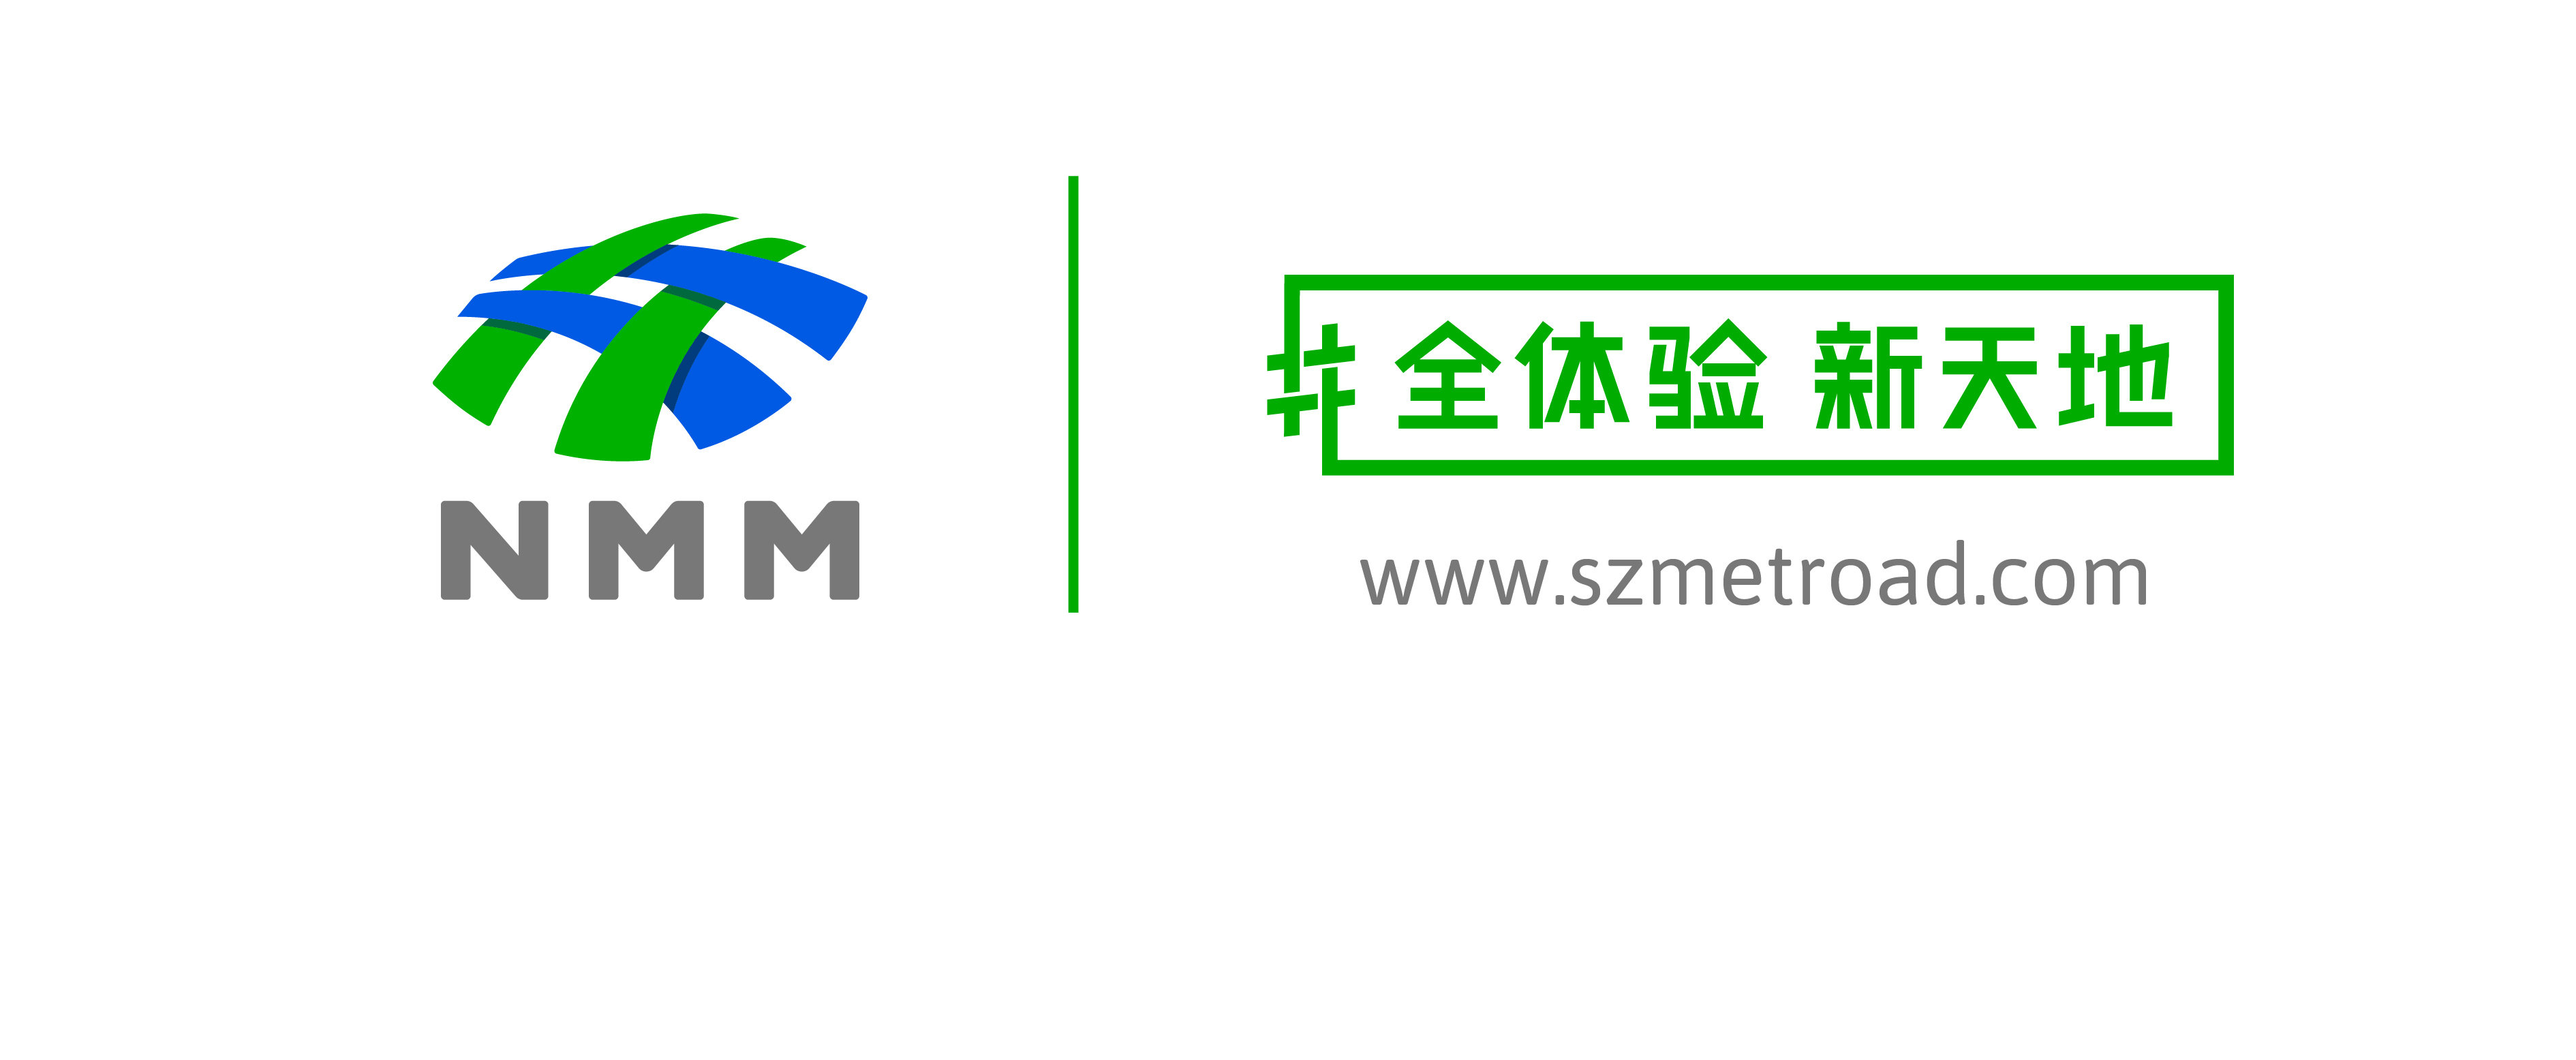 深圳商报logo图片